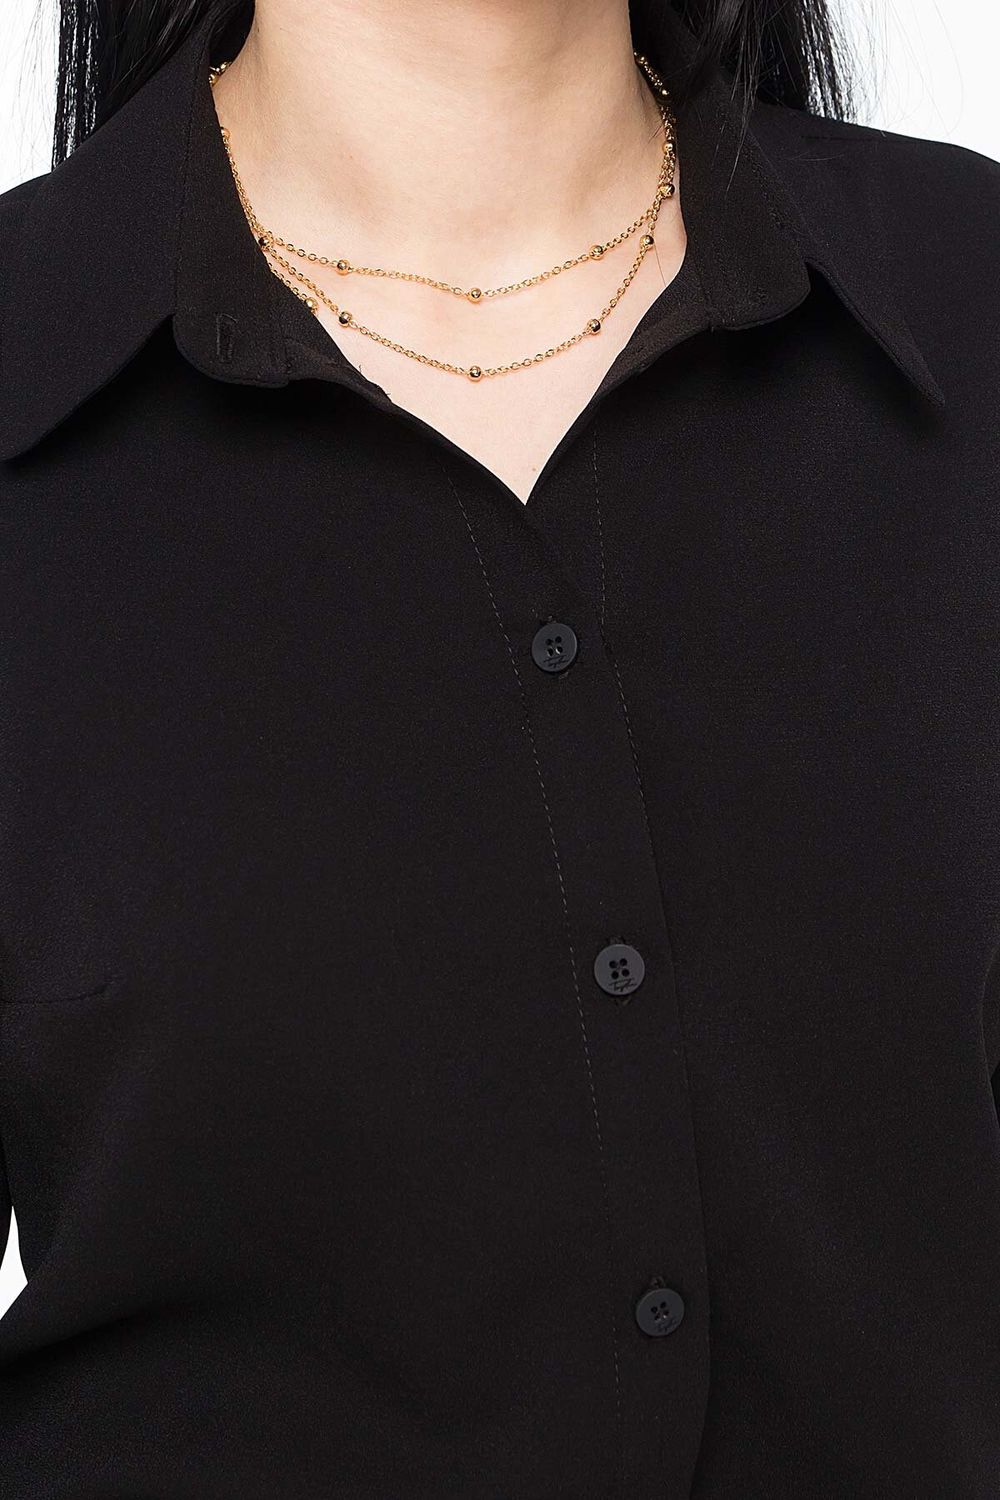 Женская классическая рубашка черного цвета - фото